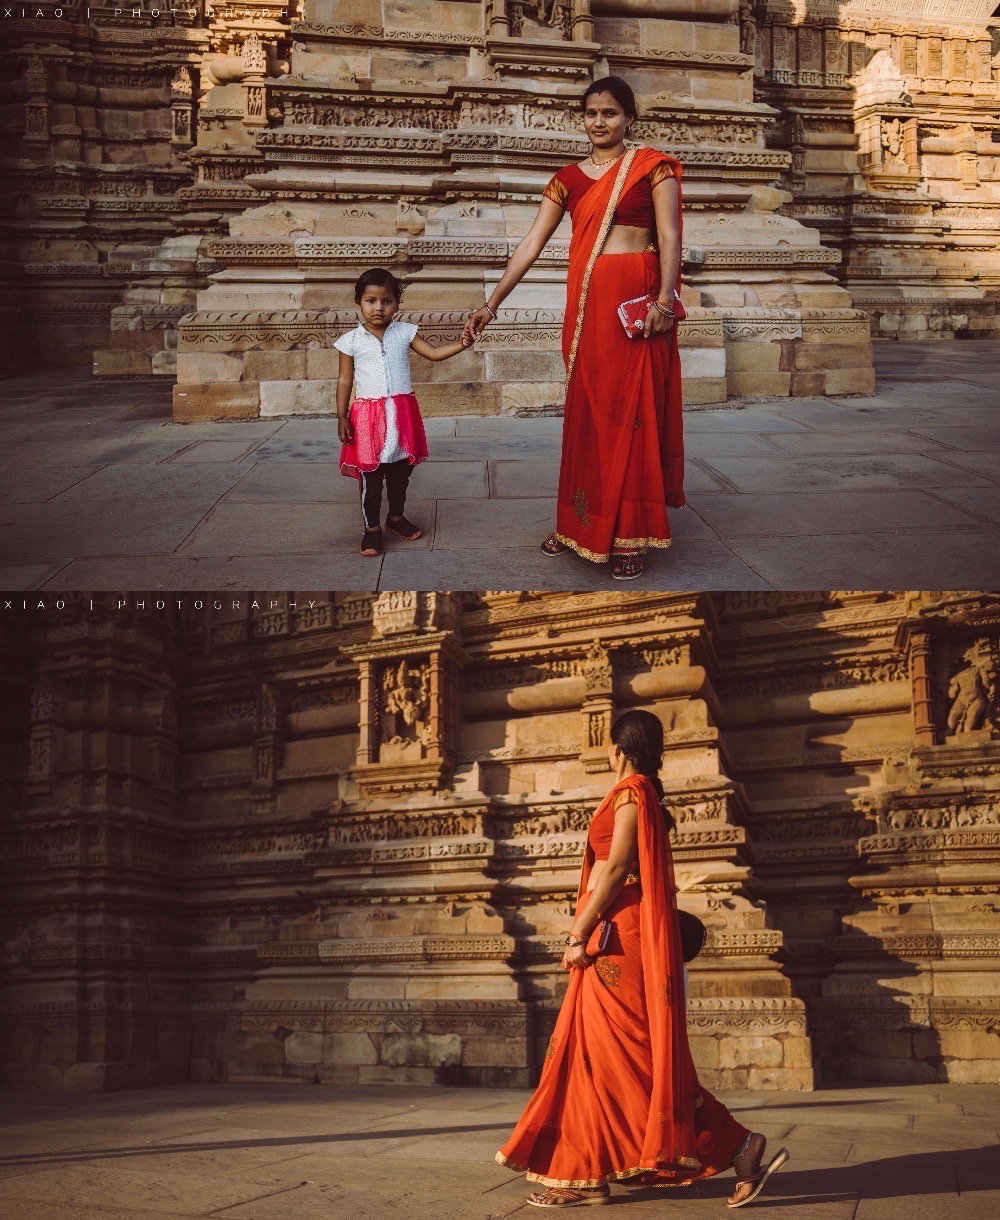 【克久拉霍｜神庙的世界】  克久拉霍位于印度的中央邦，“克久拉”是印度语“椰子”的意思，1000多年